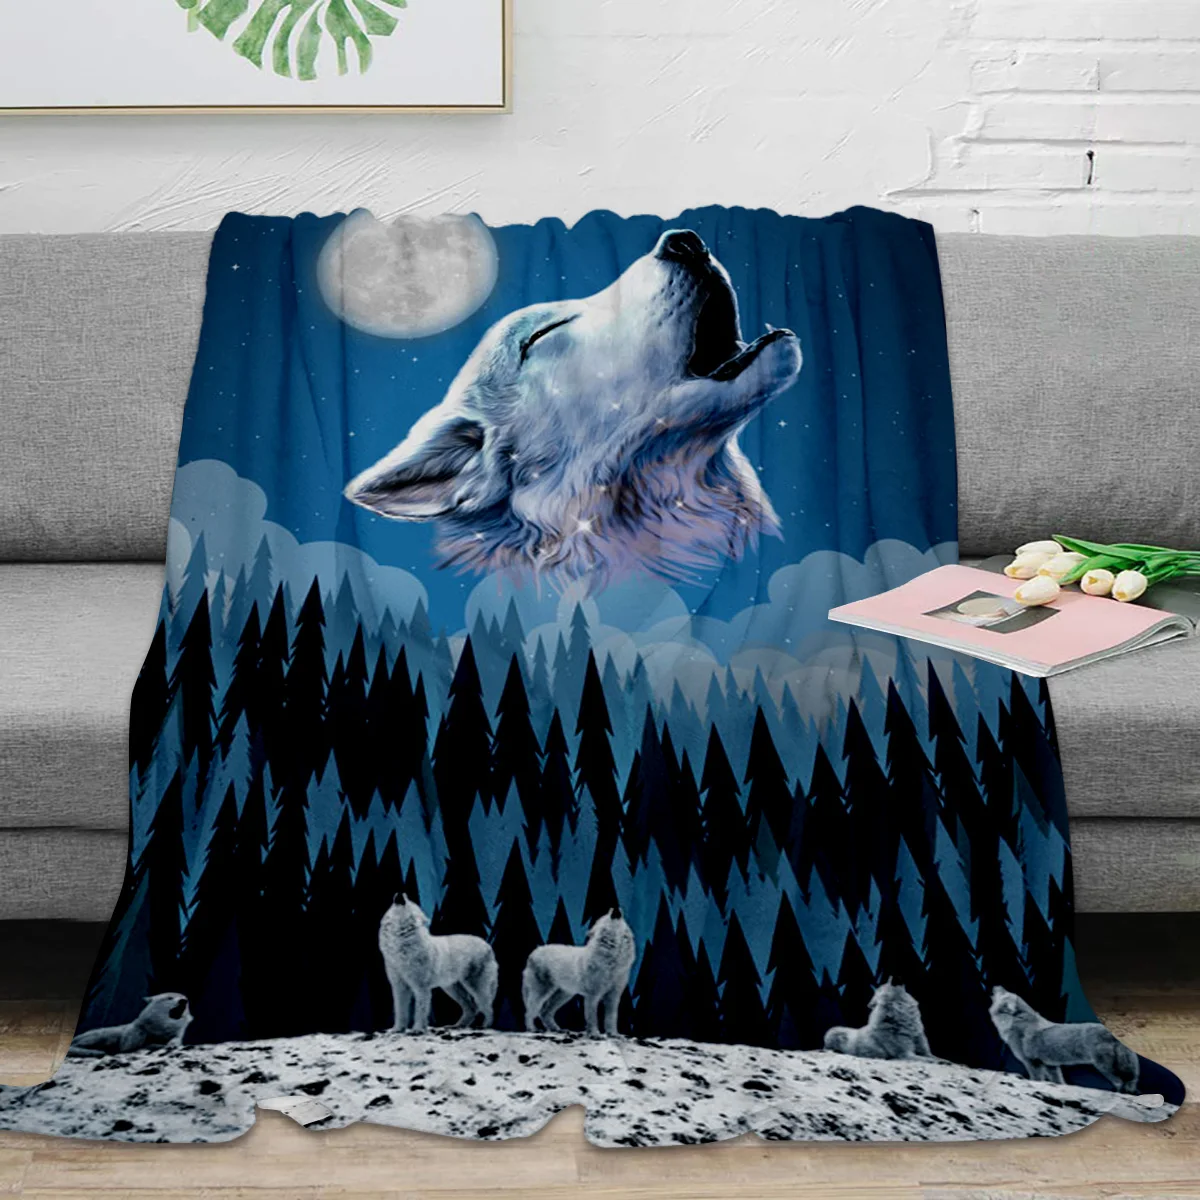 

Воющий плед из древесины с волками, луна, теплое плюшевое одеяло, портативное одеяло для путешествий, кемпинга, пикника